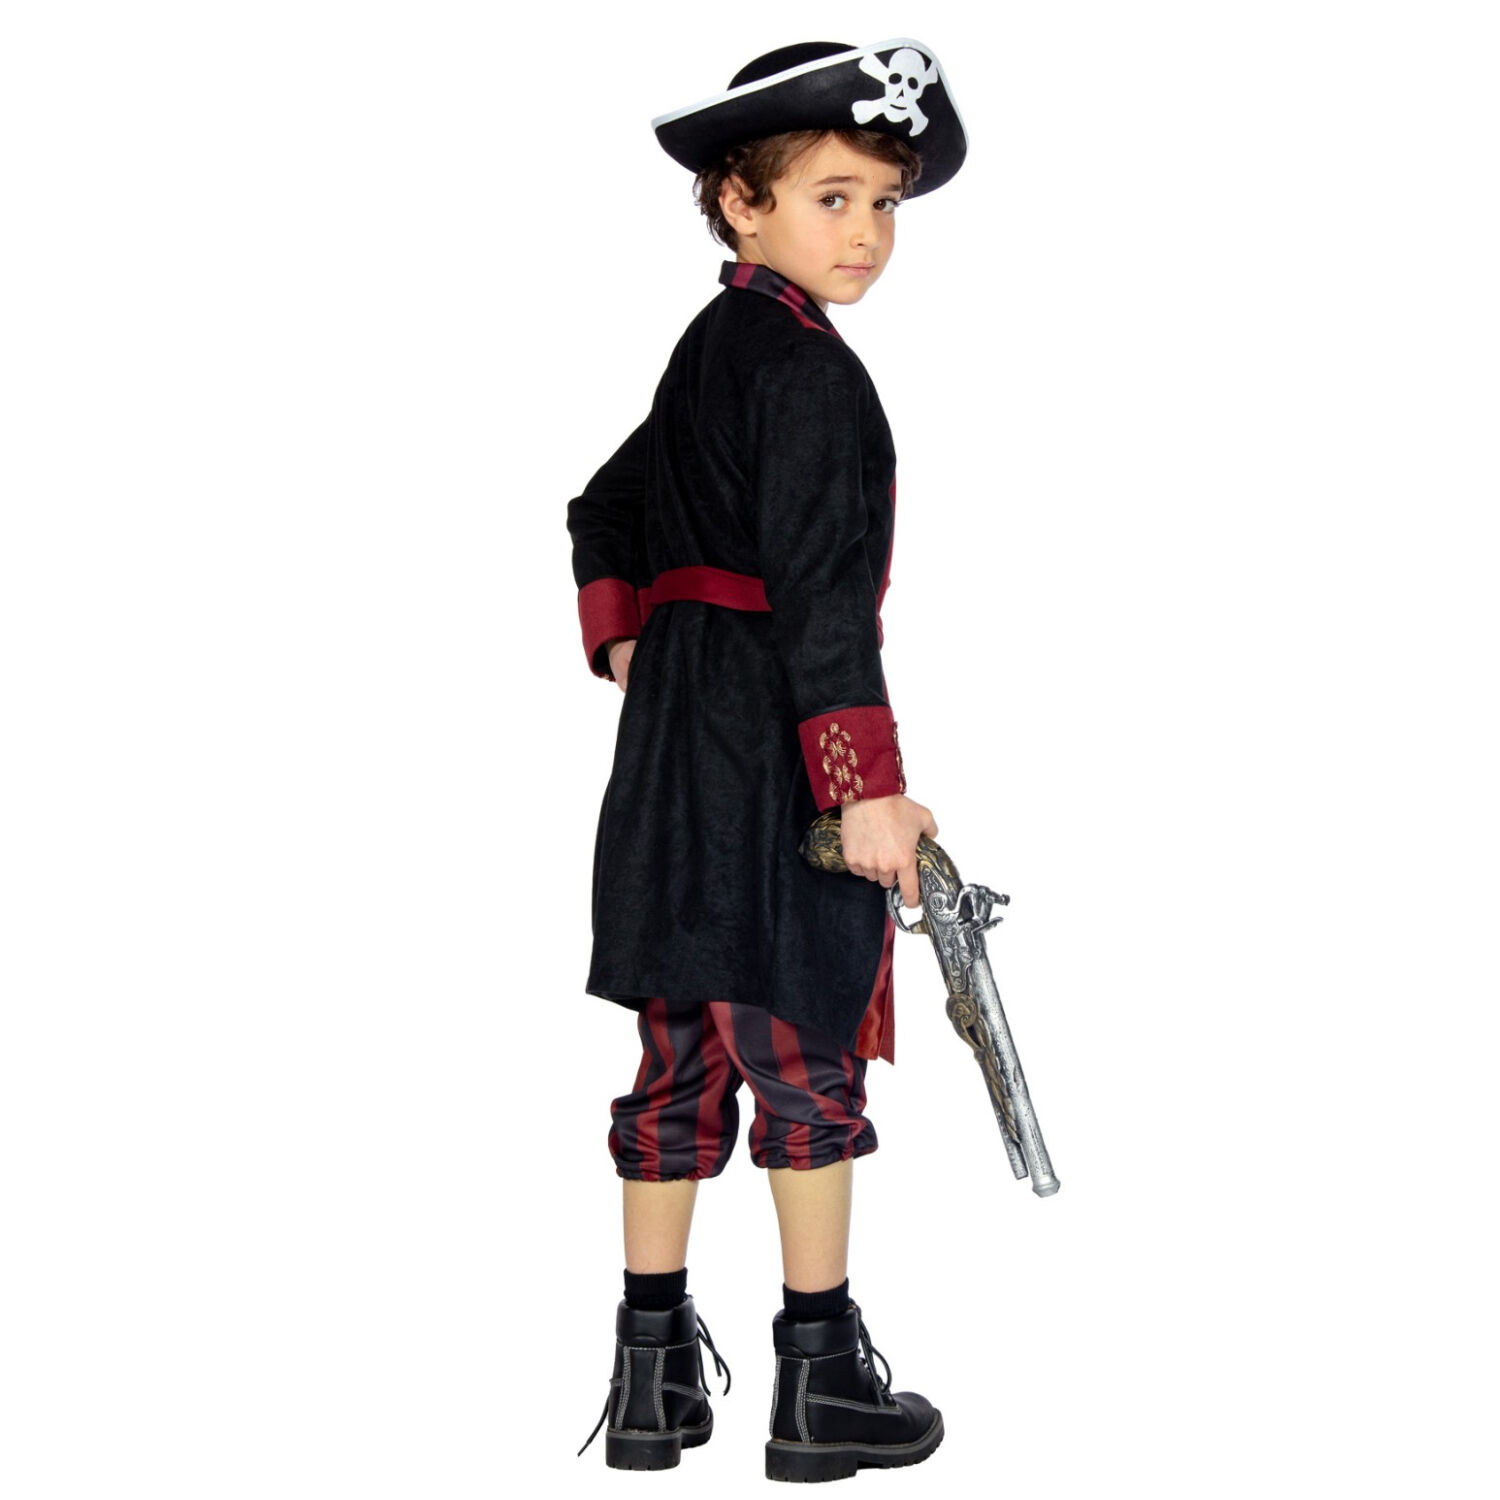 NEU Kinder-Kostm Pirat, 3-tlg. mit Hose, Jacke und Grtel, burgund-schwarz, Gr. 116 Bild 2